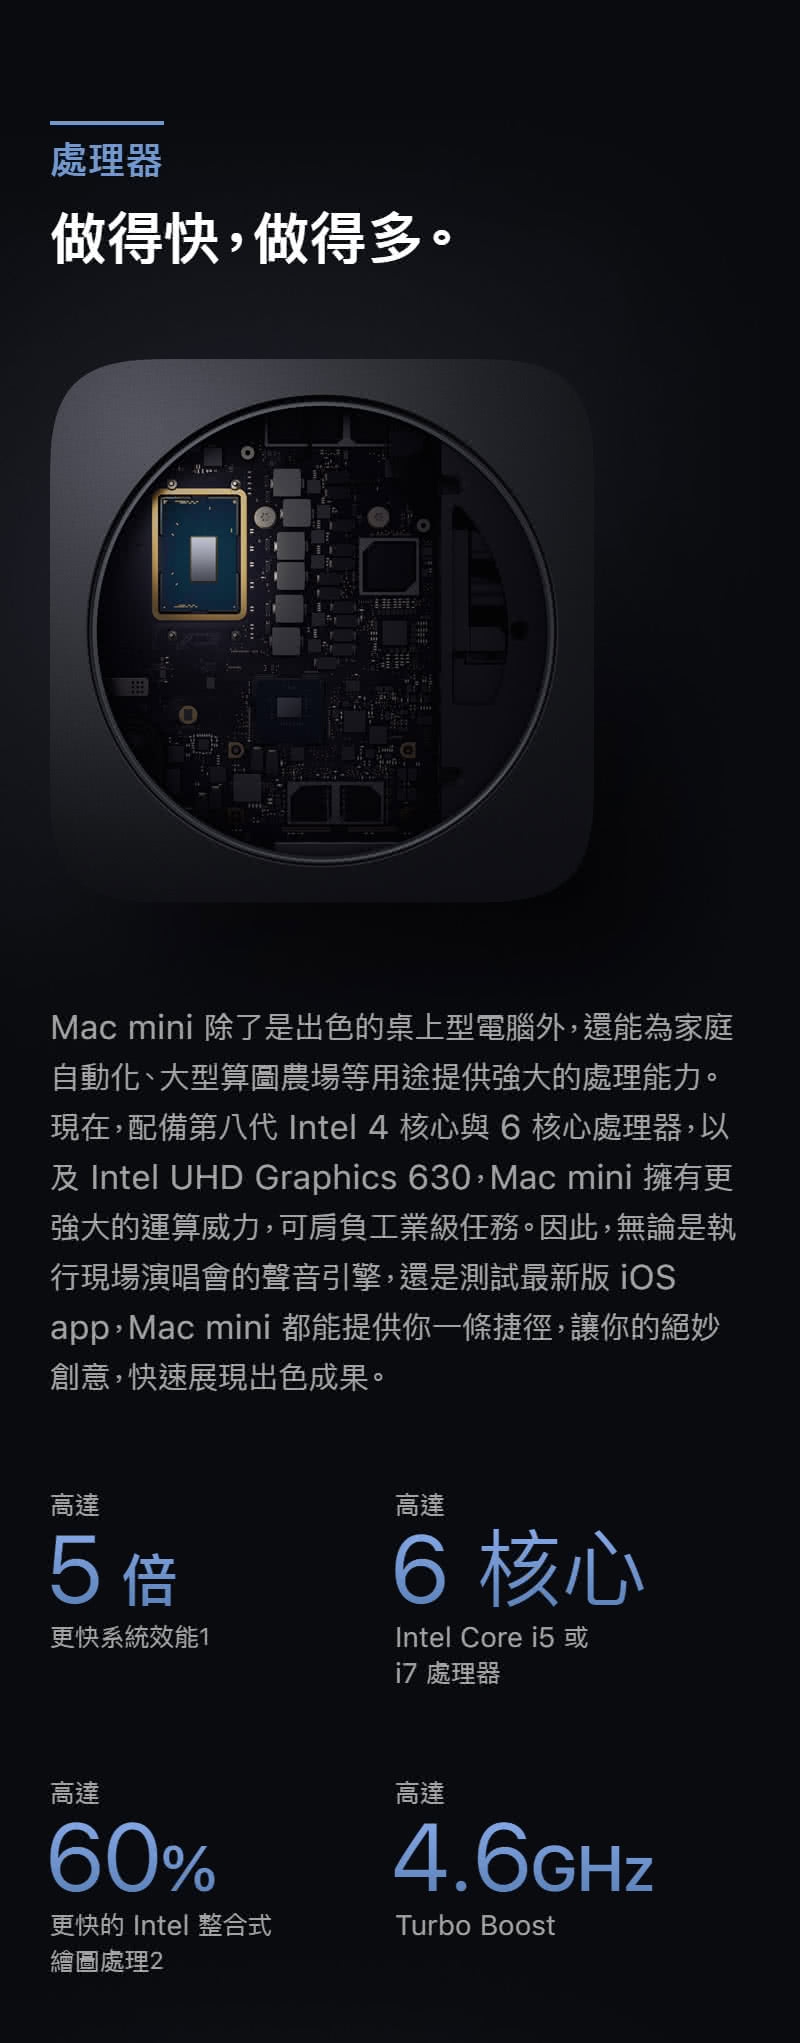 Apple Mac mini 3.0GHz i5 8G/256G(MRTT2TA/A)